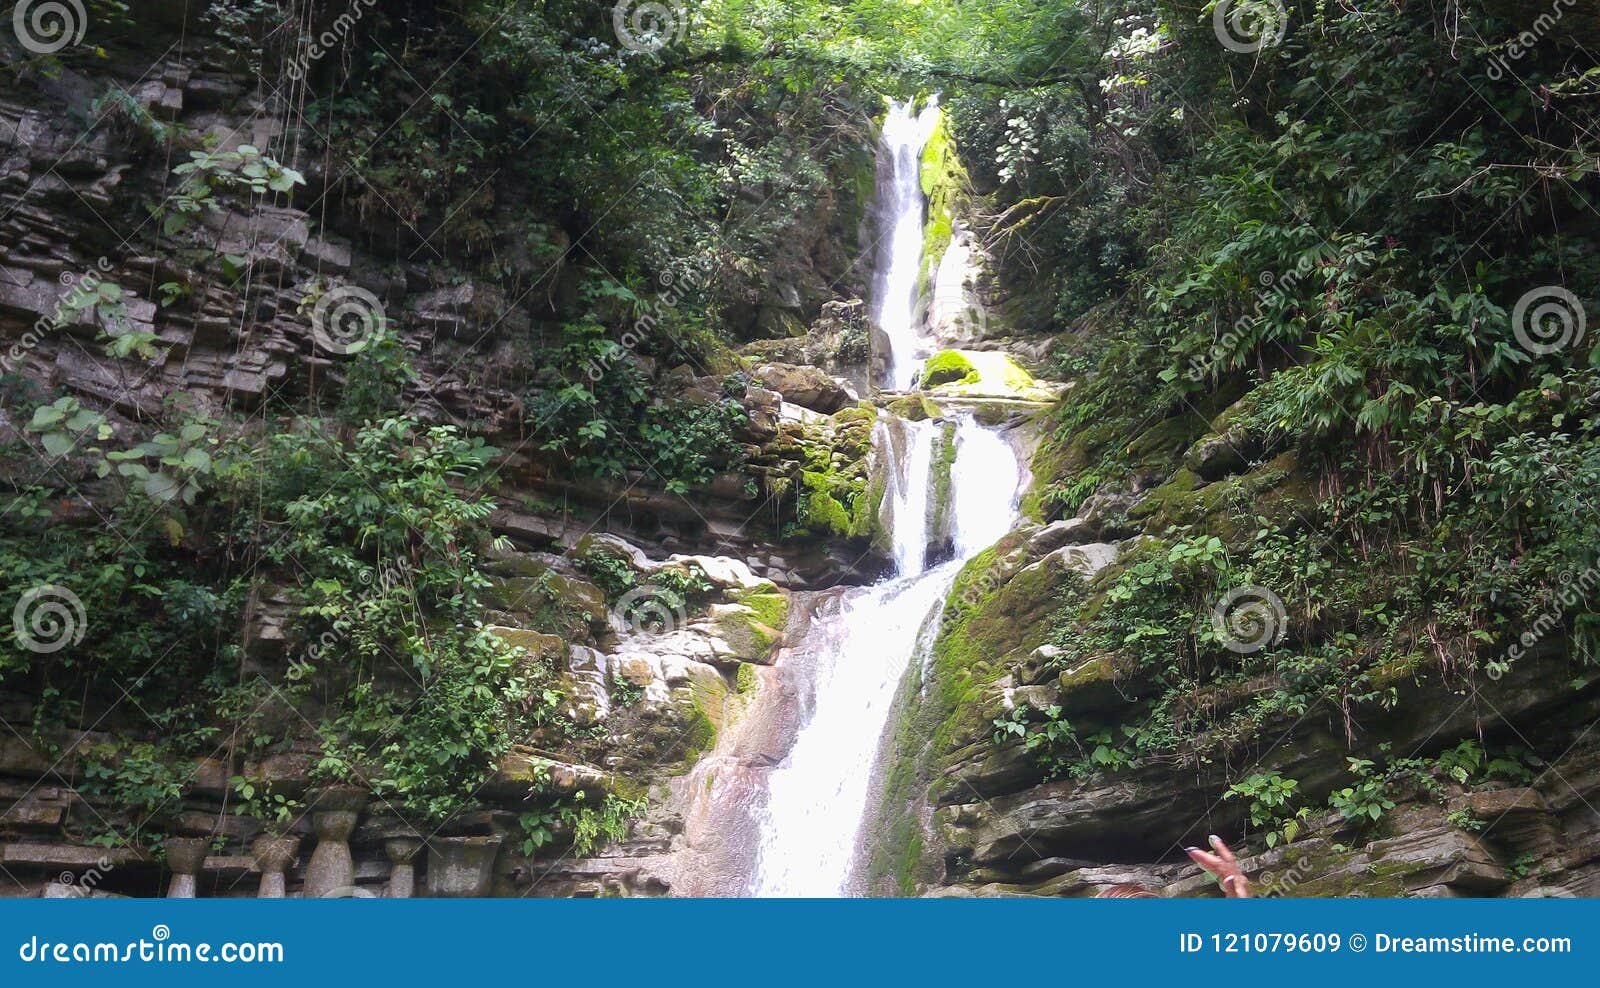 beautiful falls in xilitla